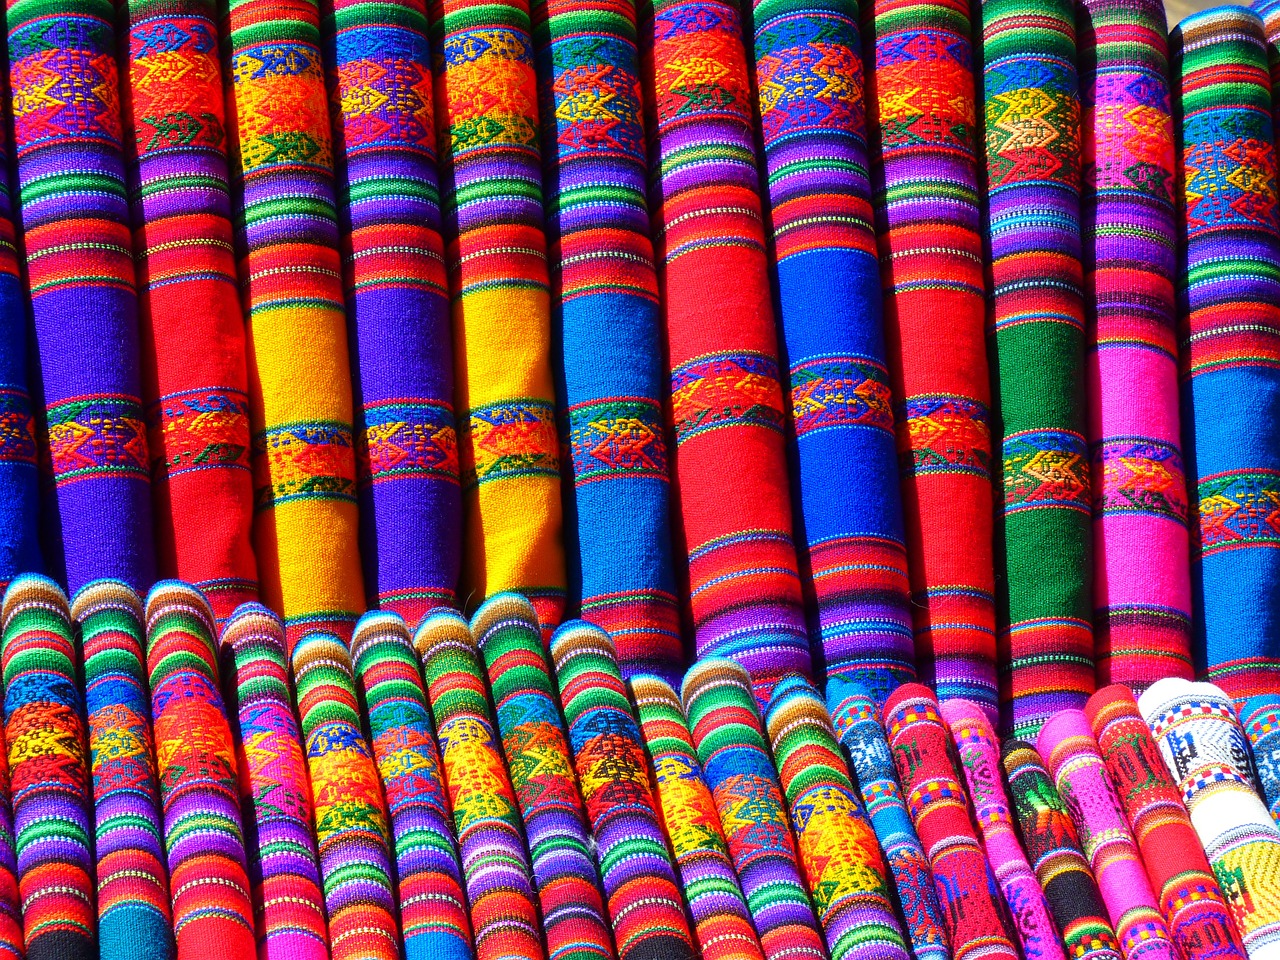 Indie. Jakie znaczenie mają kolory